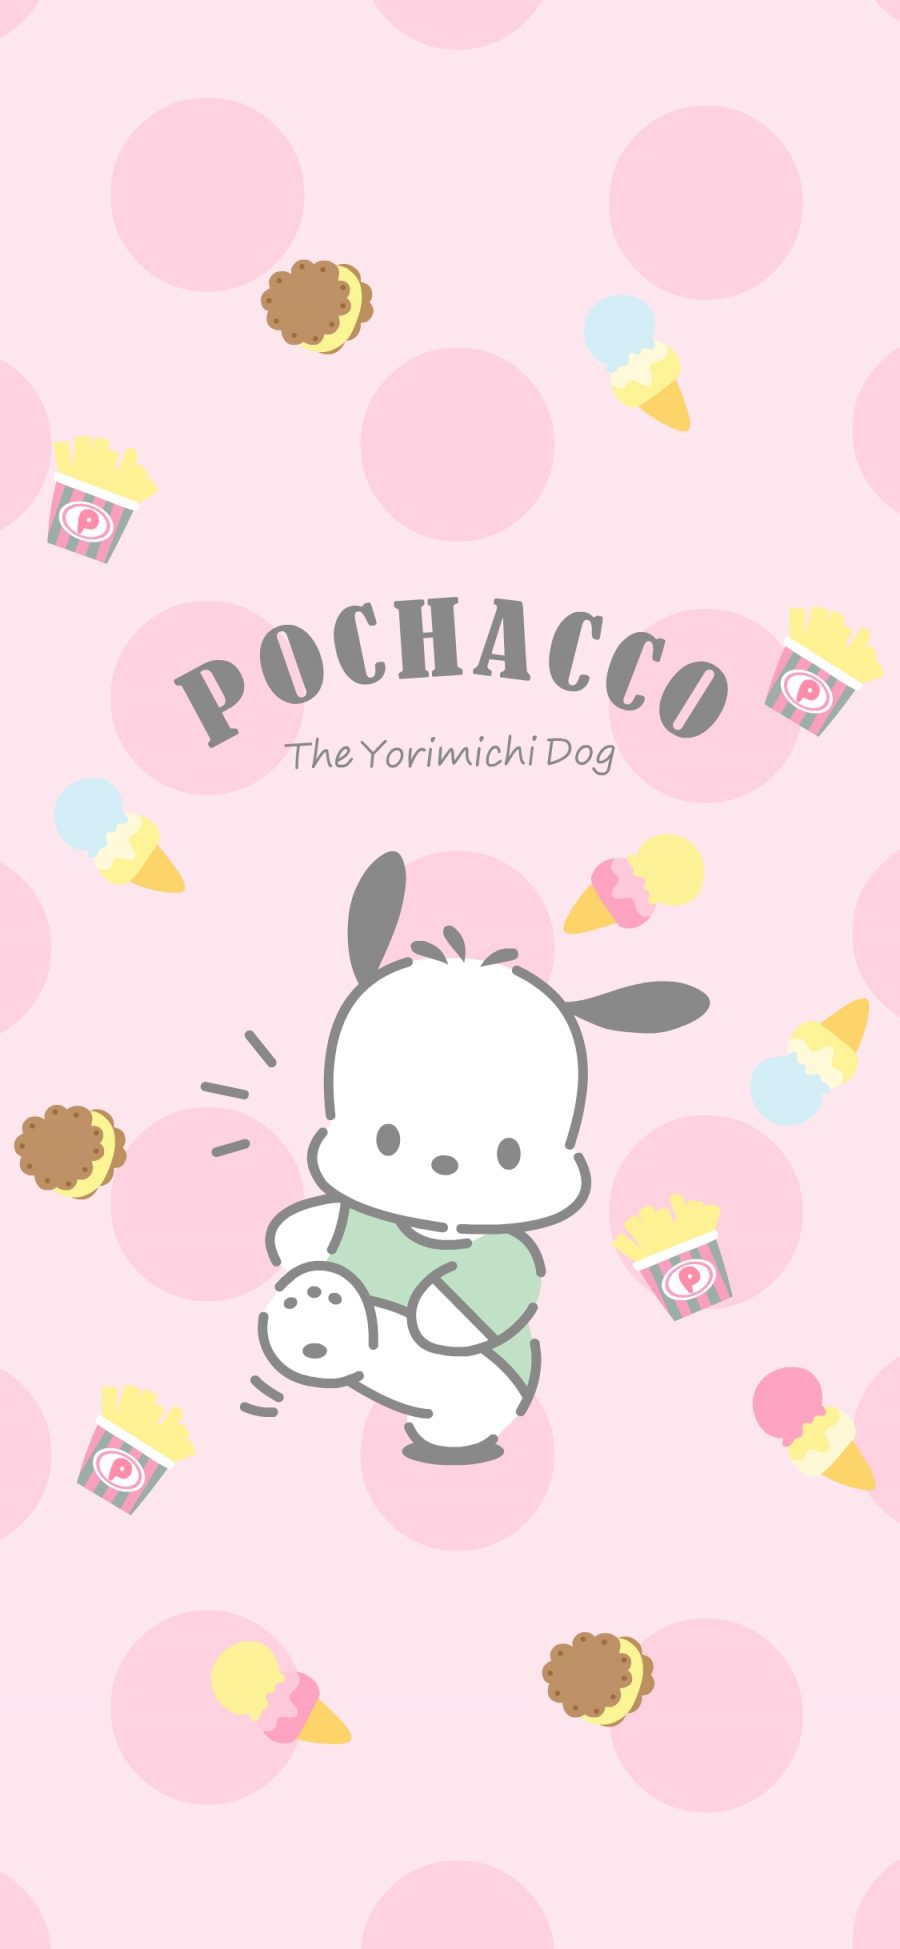 [2436×1125]帕恰狗 pochacco 卡通 可爱 粉色 苹果手机动漫壁纸图片